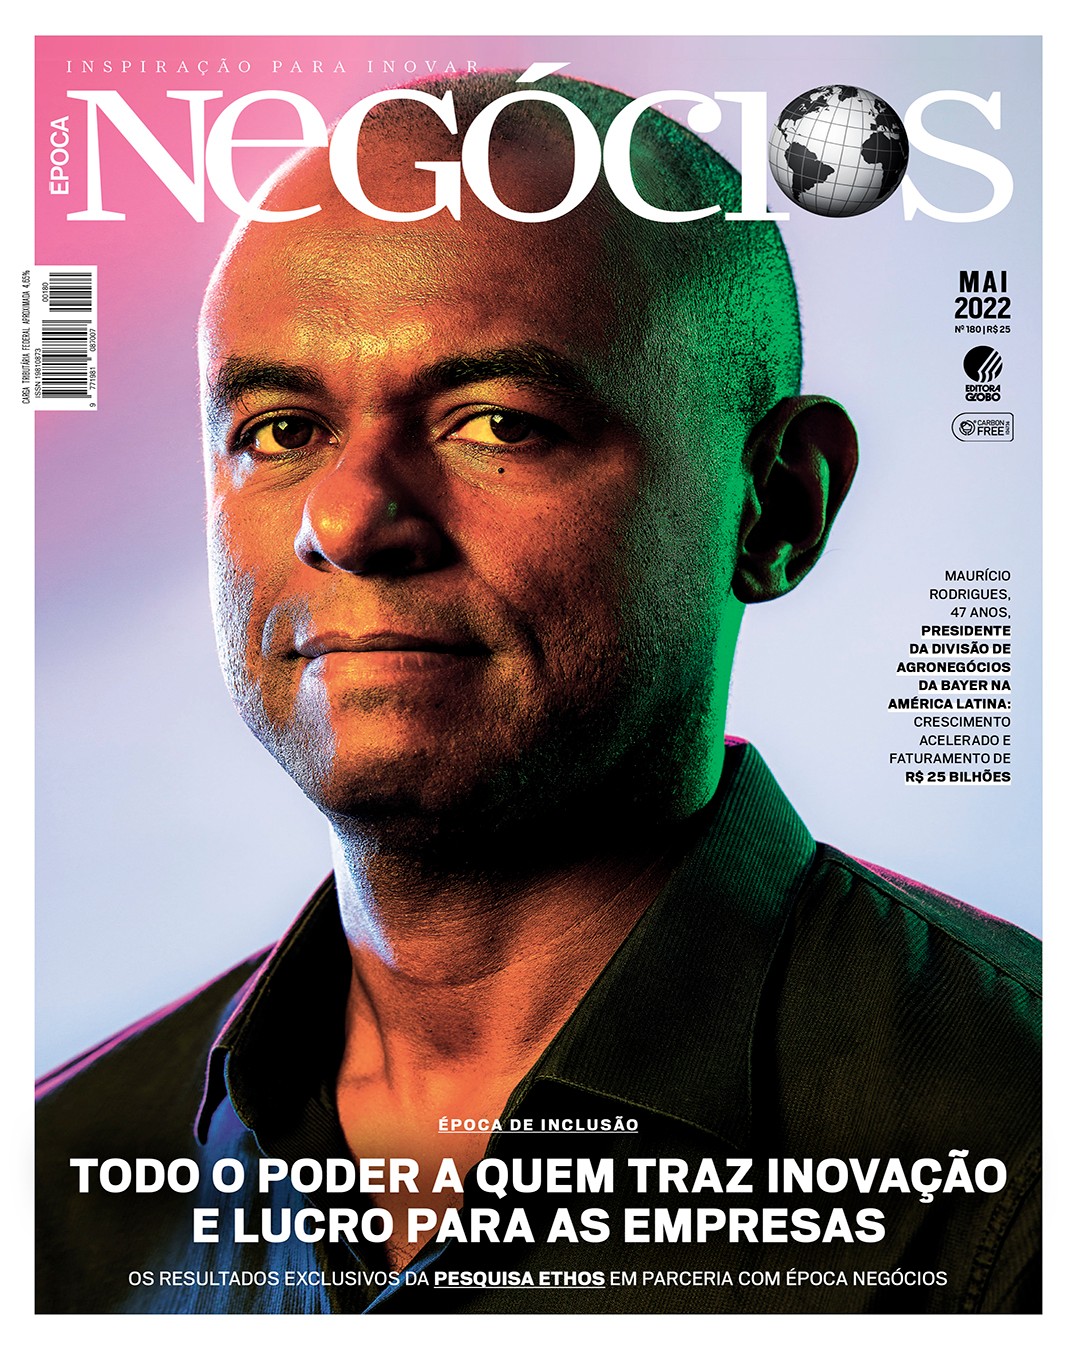 Capa da Época NEGÓCIOS de maio/22 (Foto: Reprodução)